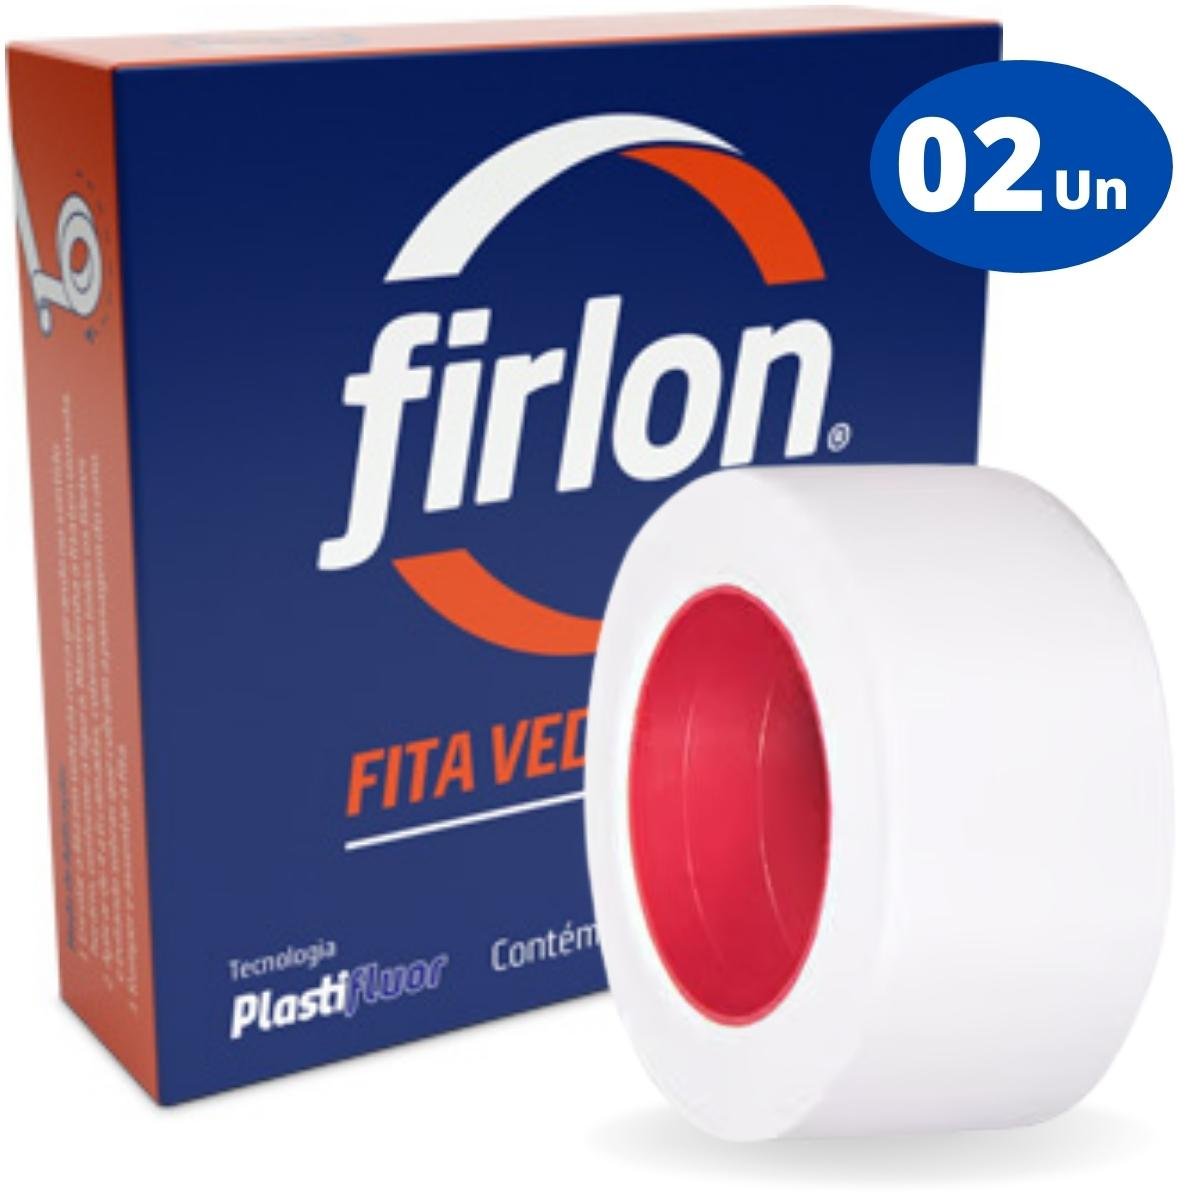 Fita Veda Rosca Teflon 18mm x 50m | Firlon | Kit 02 Un - 1